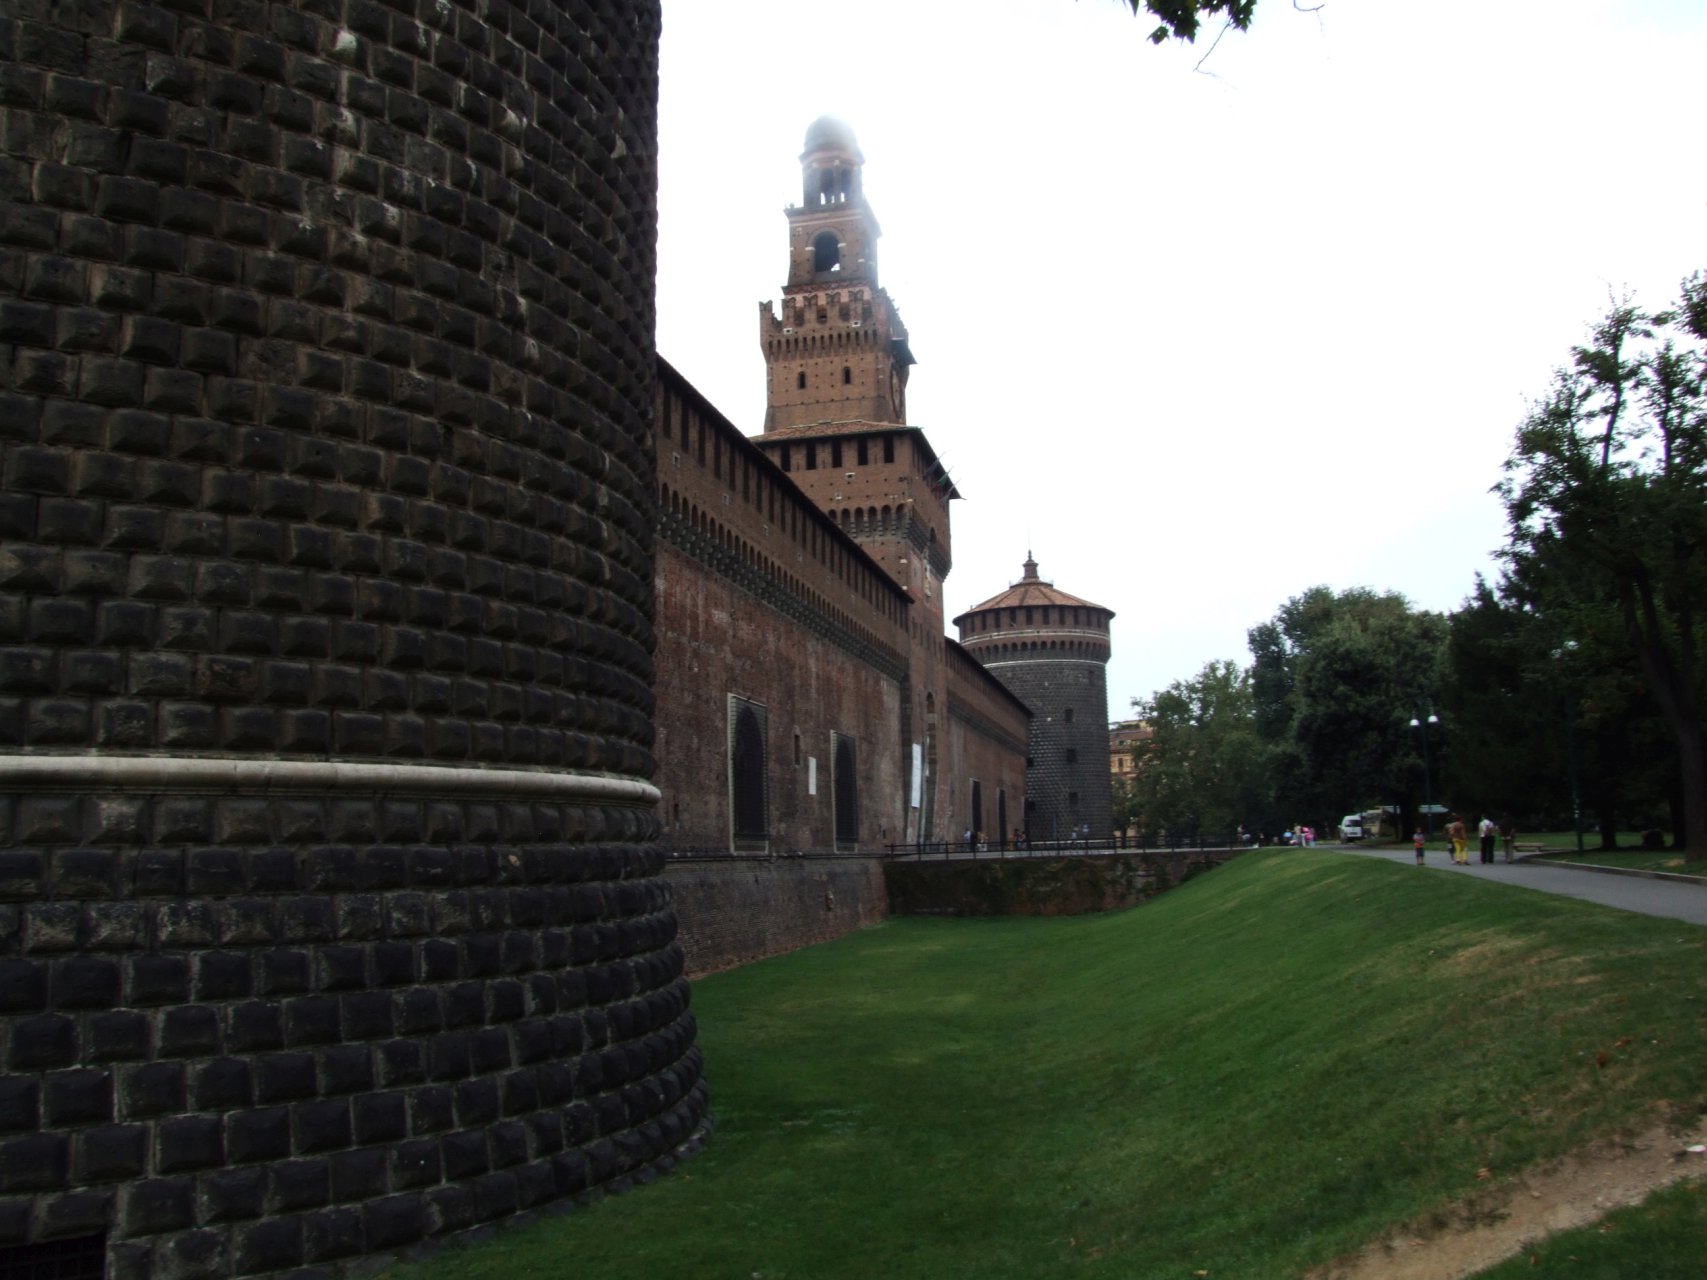 Solidne mury ogromnego zamku chroniły najpotężniejszych władców Mediolanu - klan Sforza